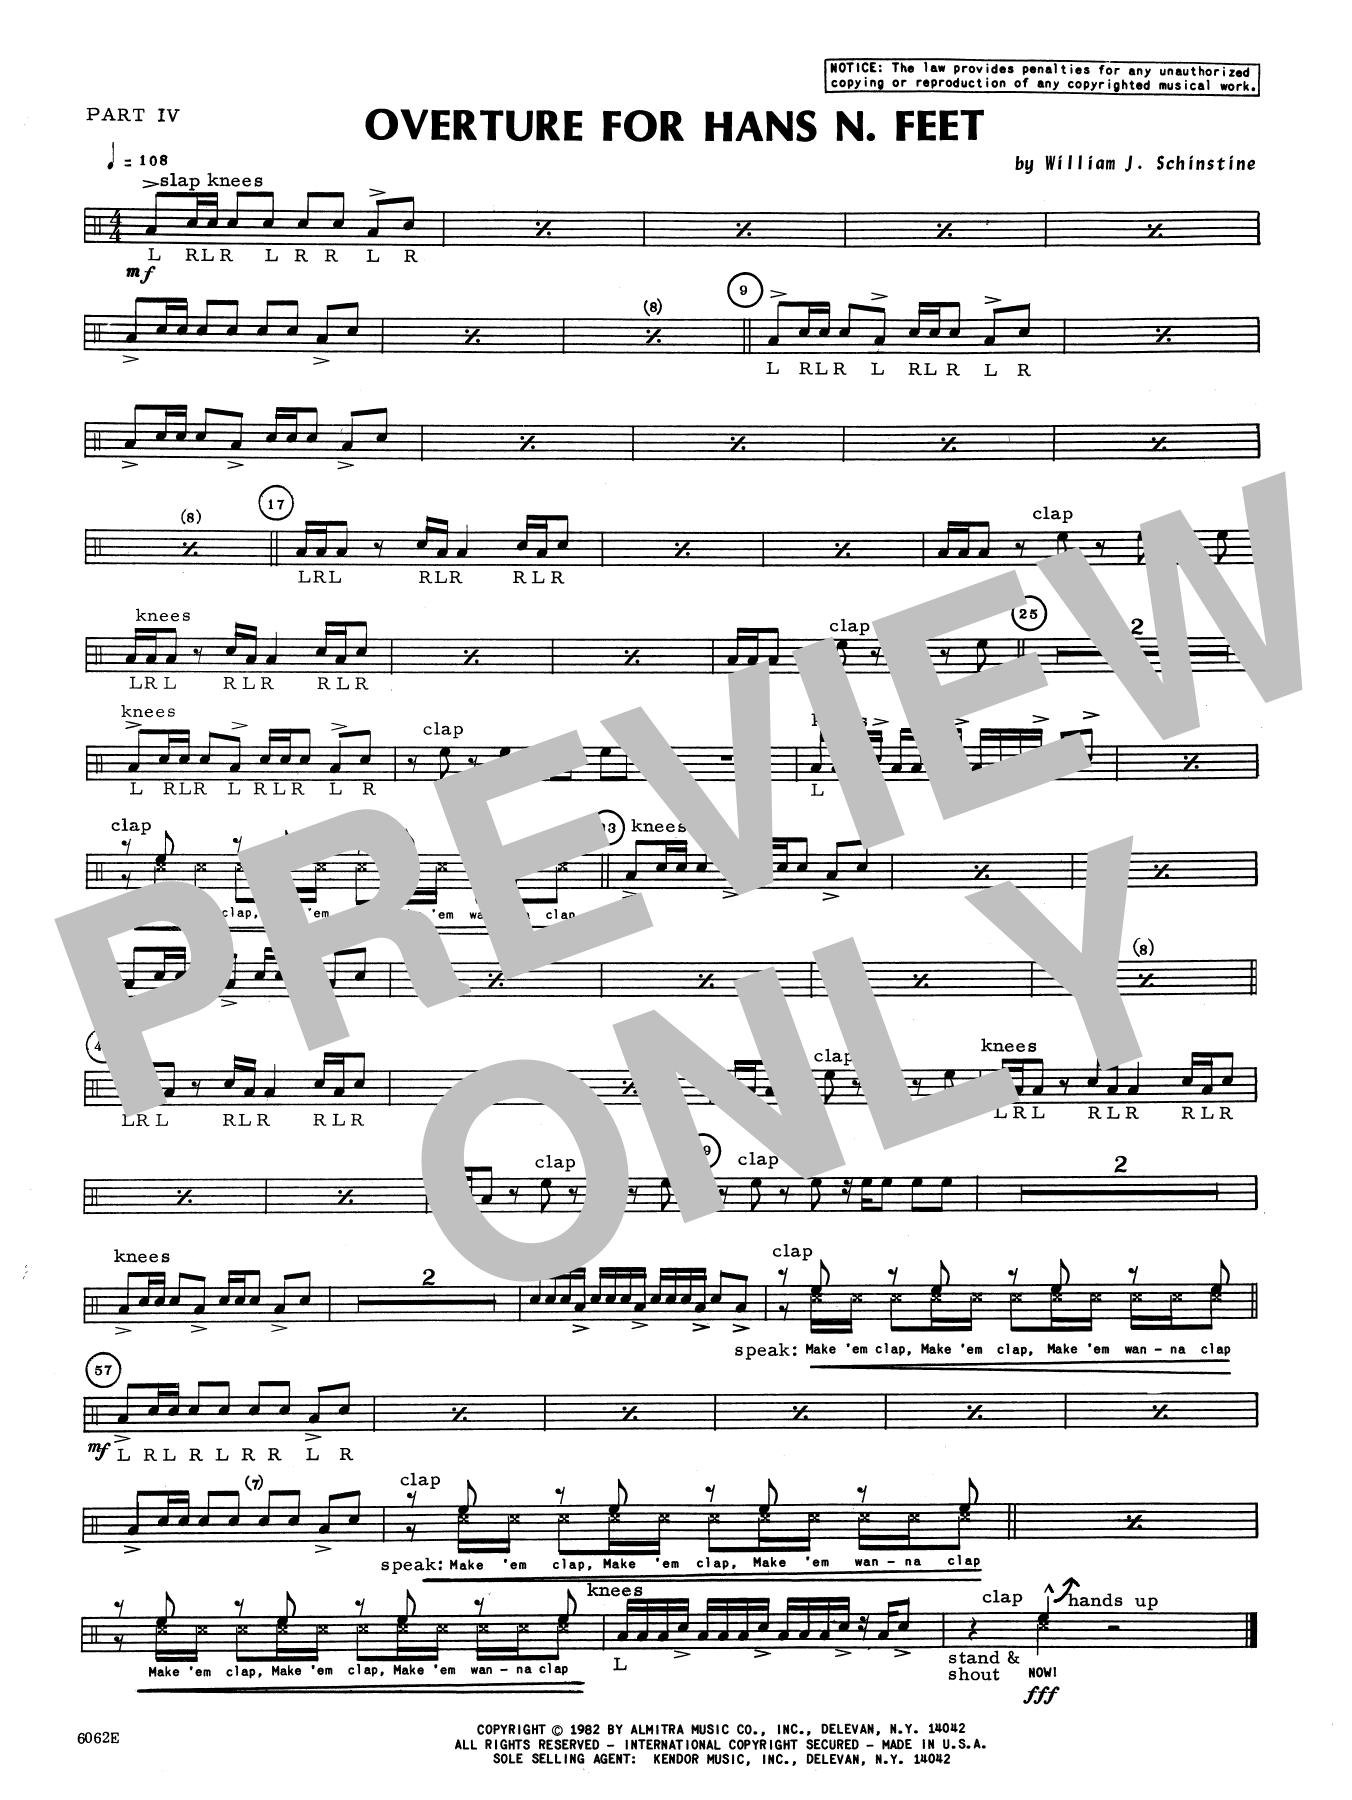 Download William Schinstine Overture For Hans N. Feet - Part 4 Sheet Music